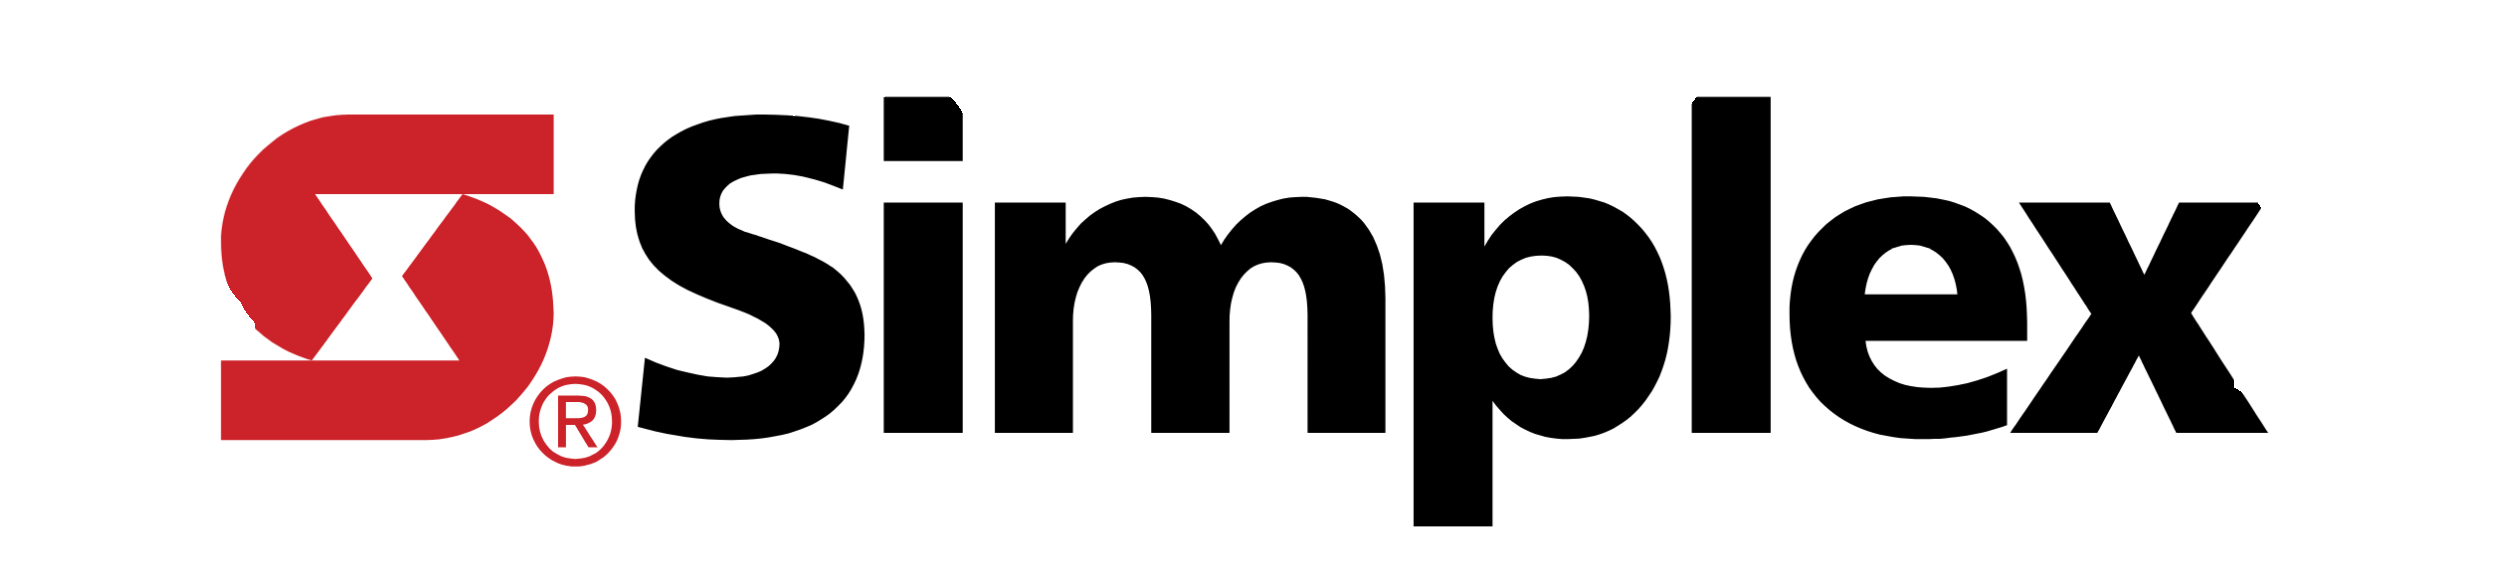 Simplex-logo